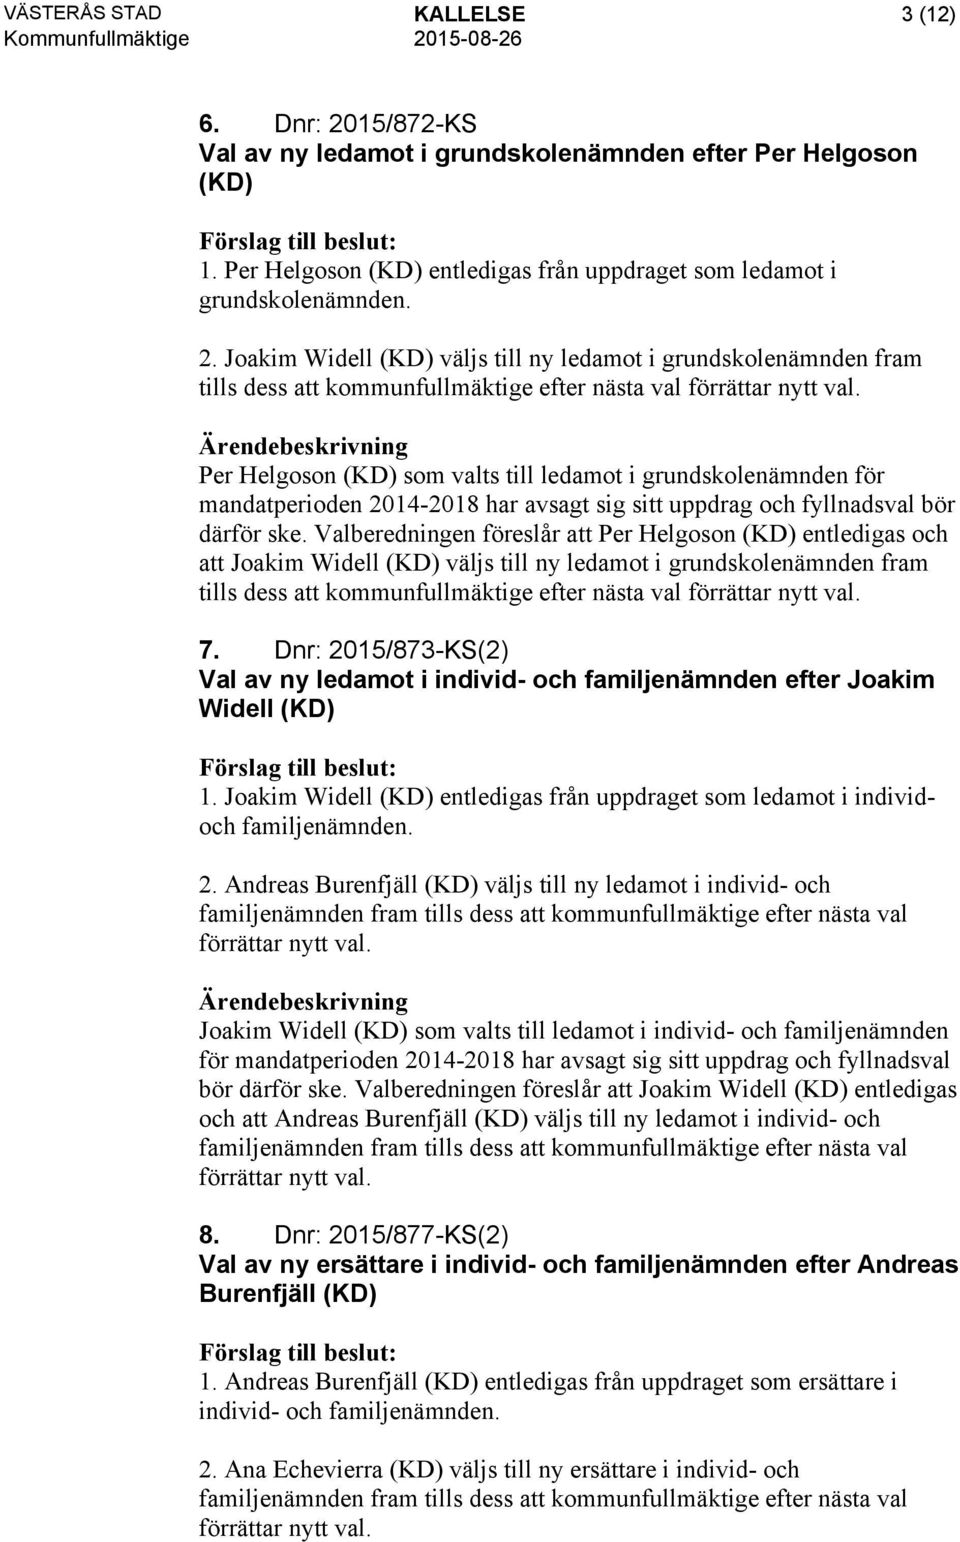 Valberedningen föreslår att Per Helgoson (KD) entledigas och att Joakim Widell (KD) väljs till ny ledamot i grundskolenämnden fram tills dess att kommunfullmäktige efter nästa val förrättar nytt val.